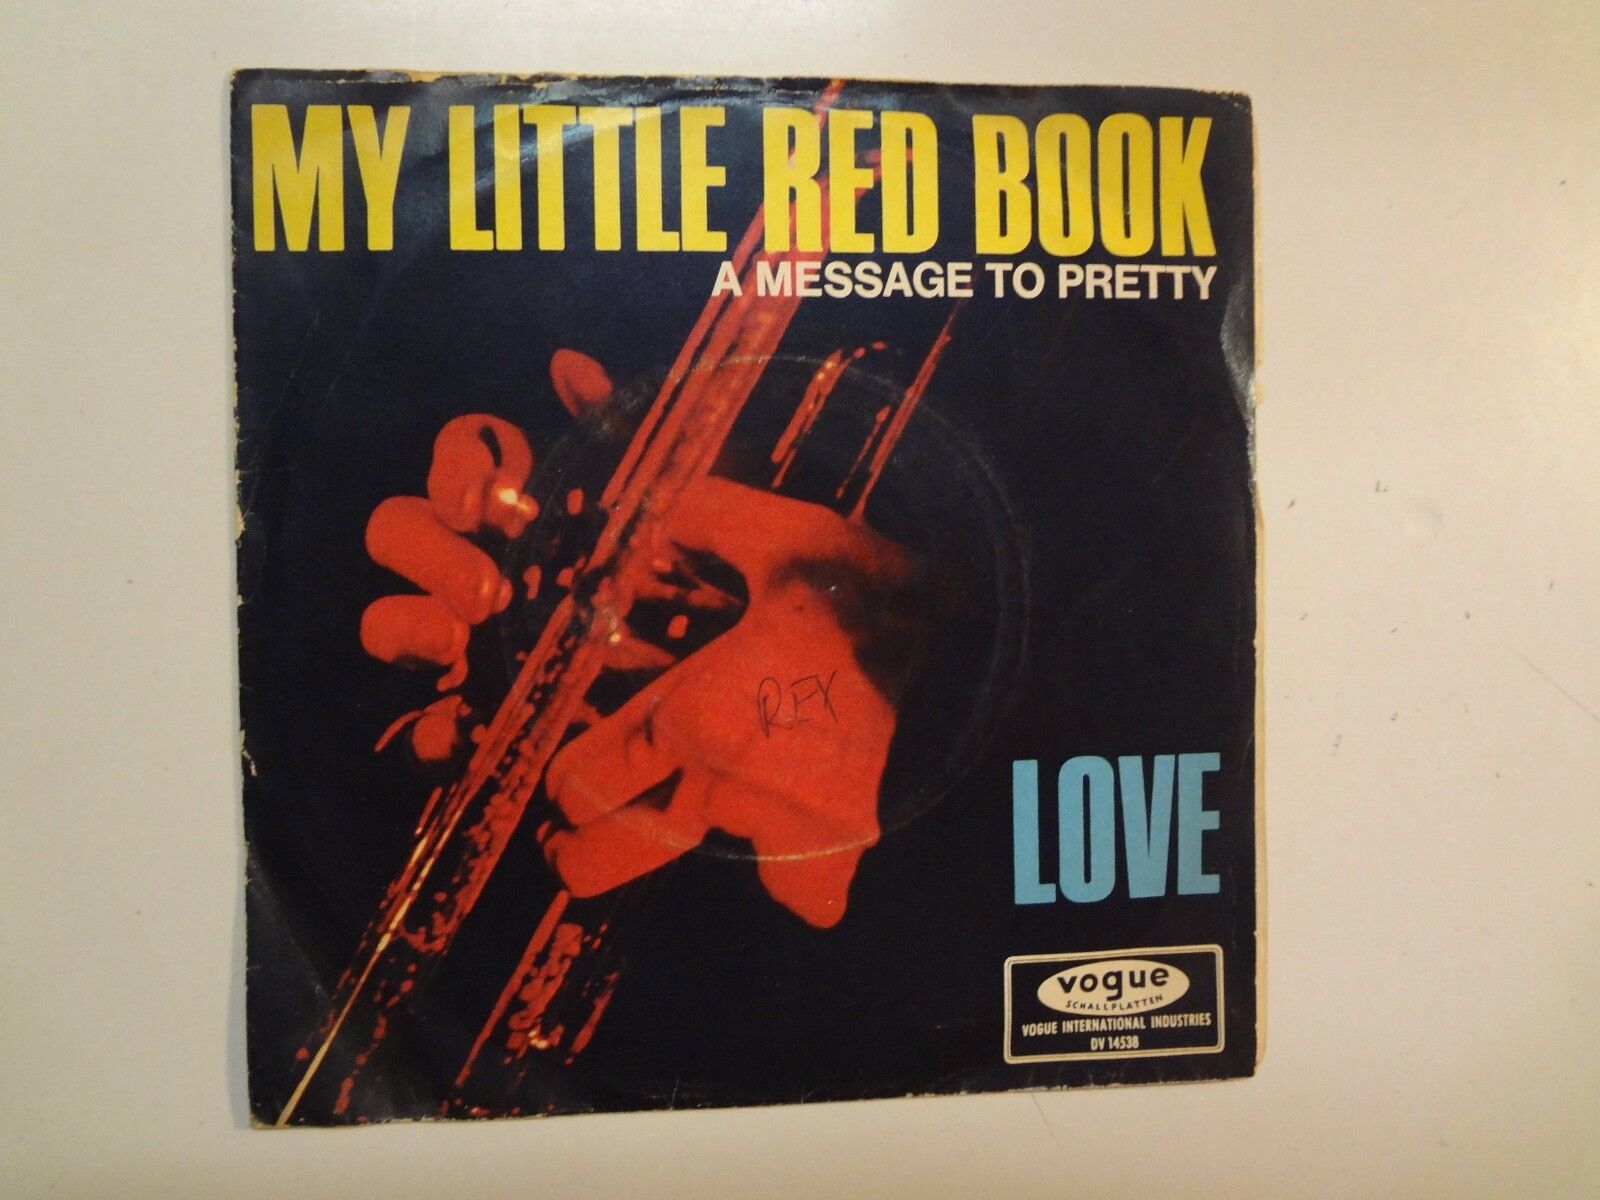 LOVE: (w/Arthur Lee) My Little Red Book-Hey Joe-Germany 7" 66 Vogue DV 14538 PSL